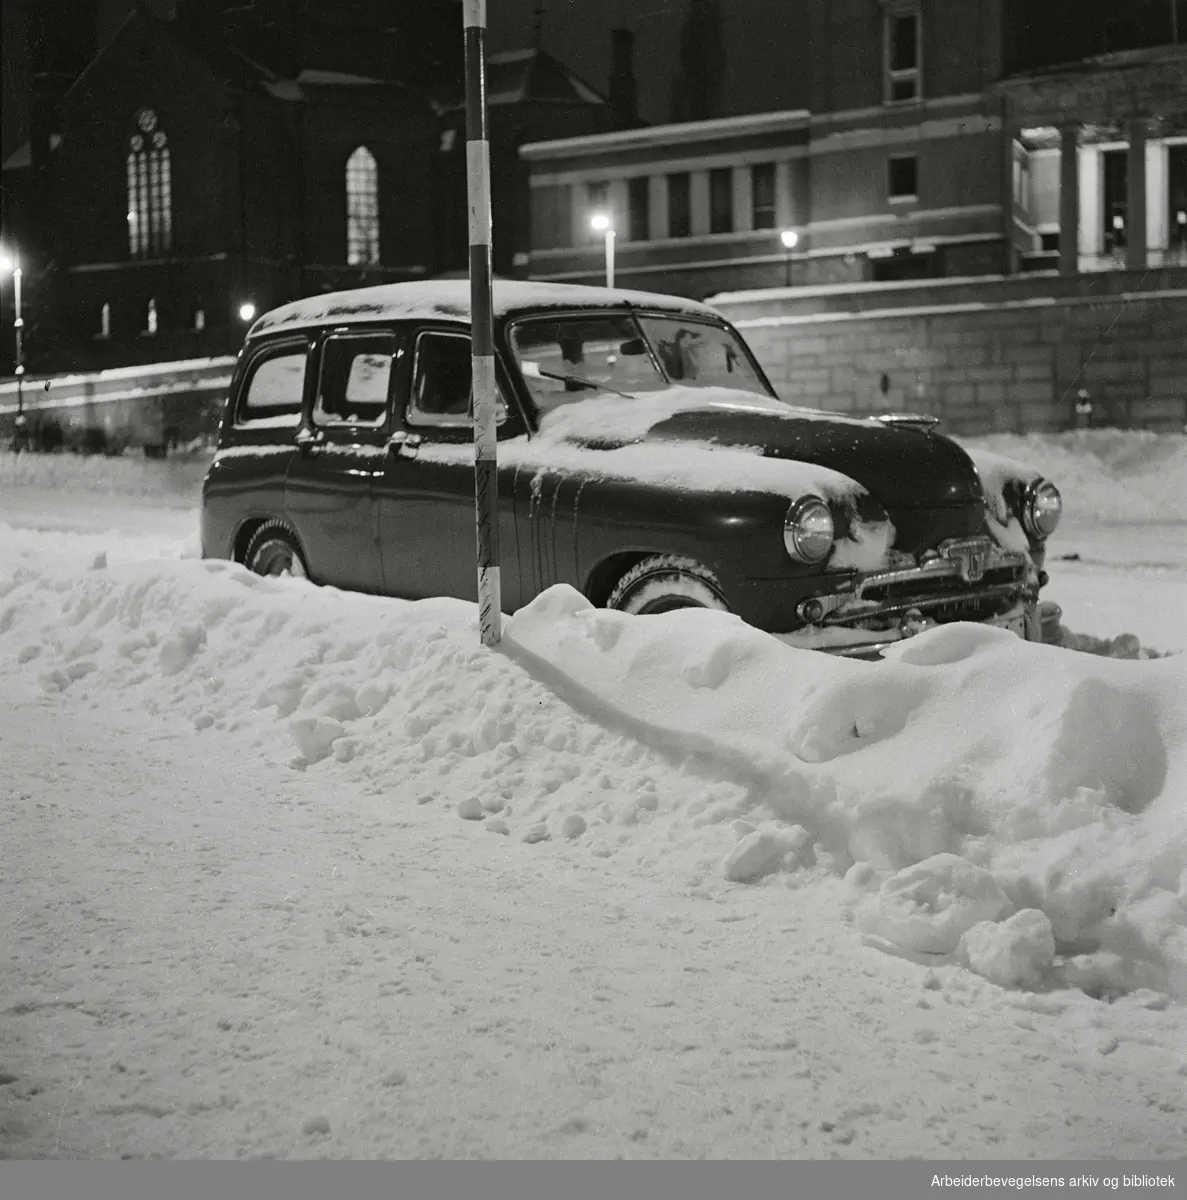 Parkert bil med snø på Arne Garborgs plass. Trefoldighetskirken og Deichmanske bibliotek i bakgrunnen. Desember 1959.